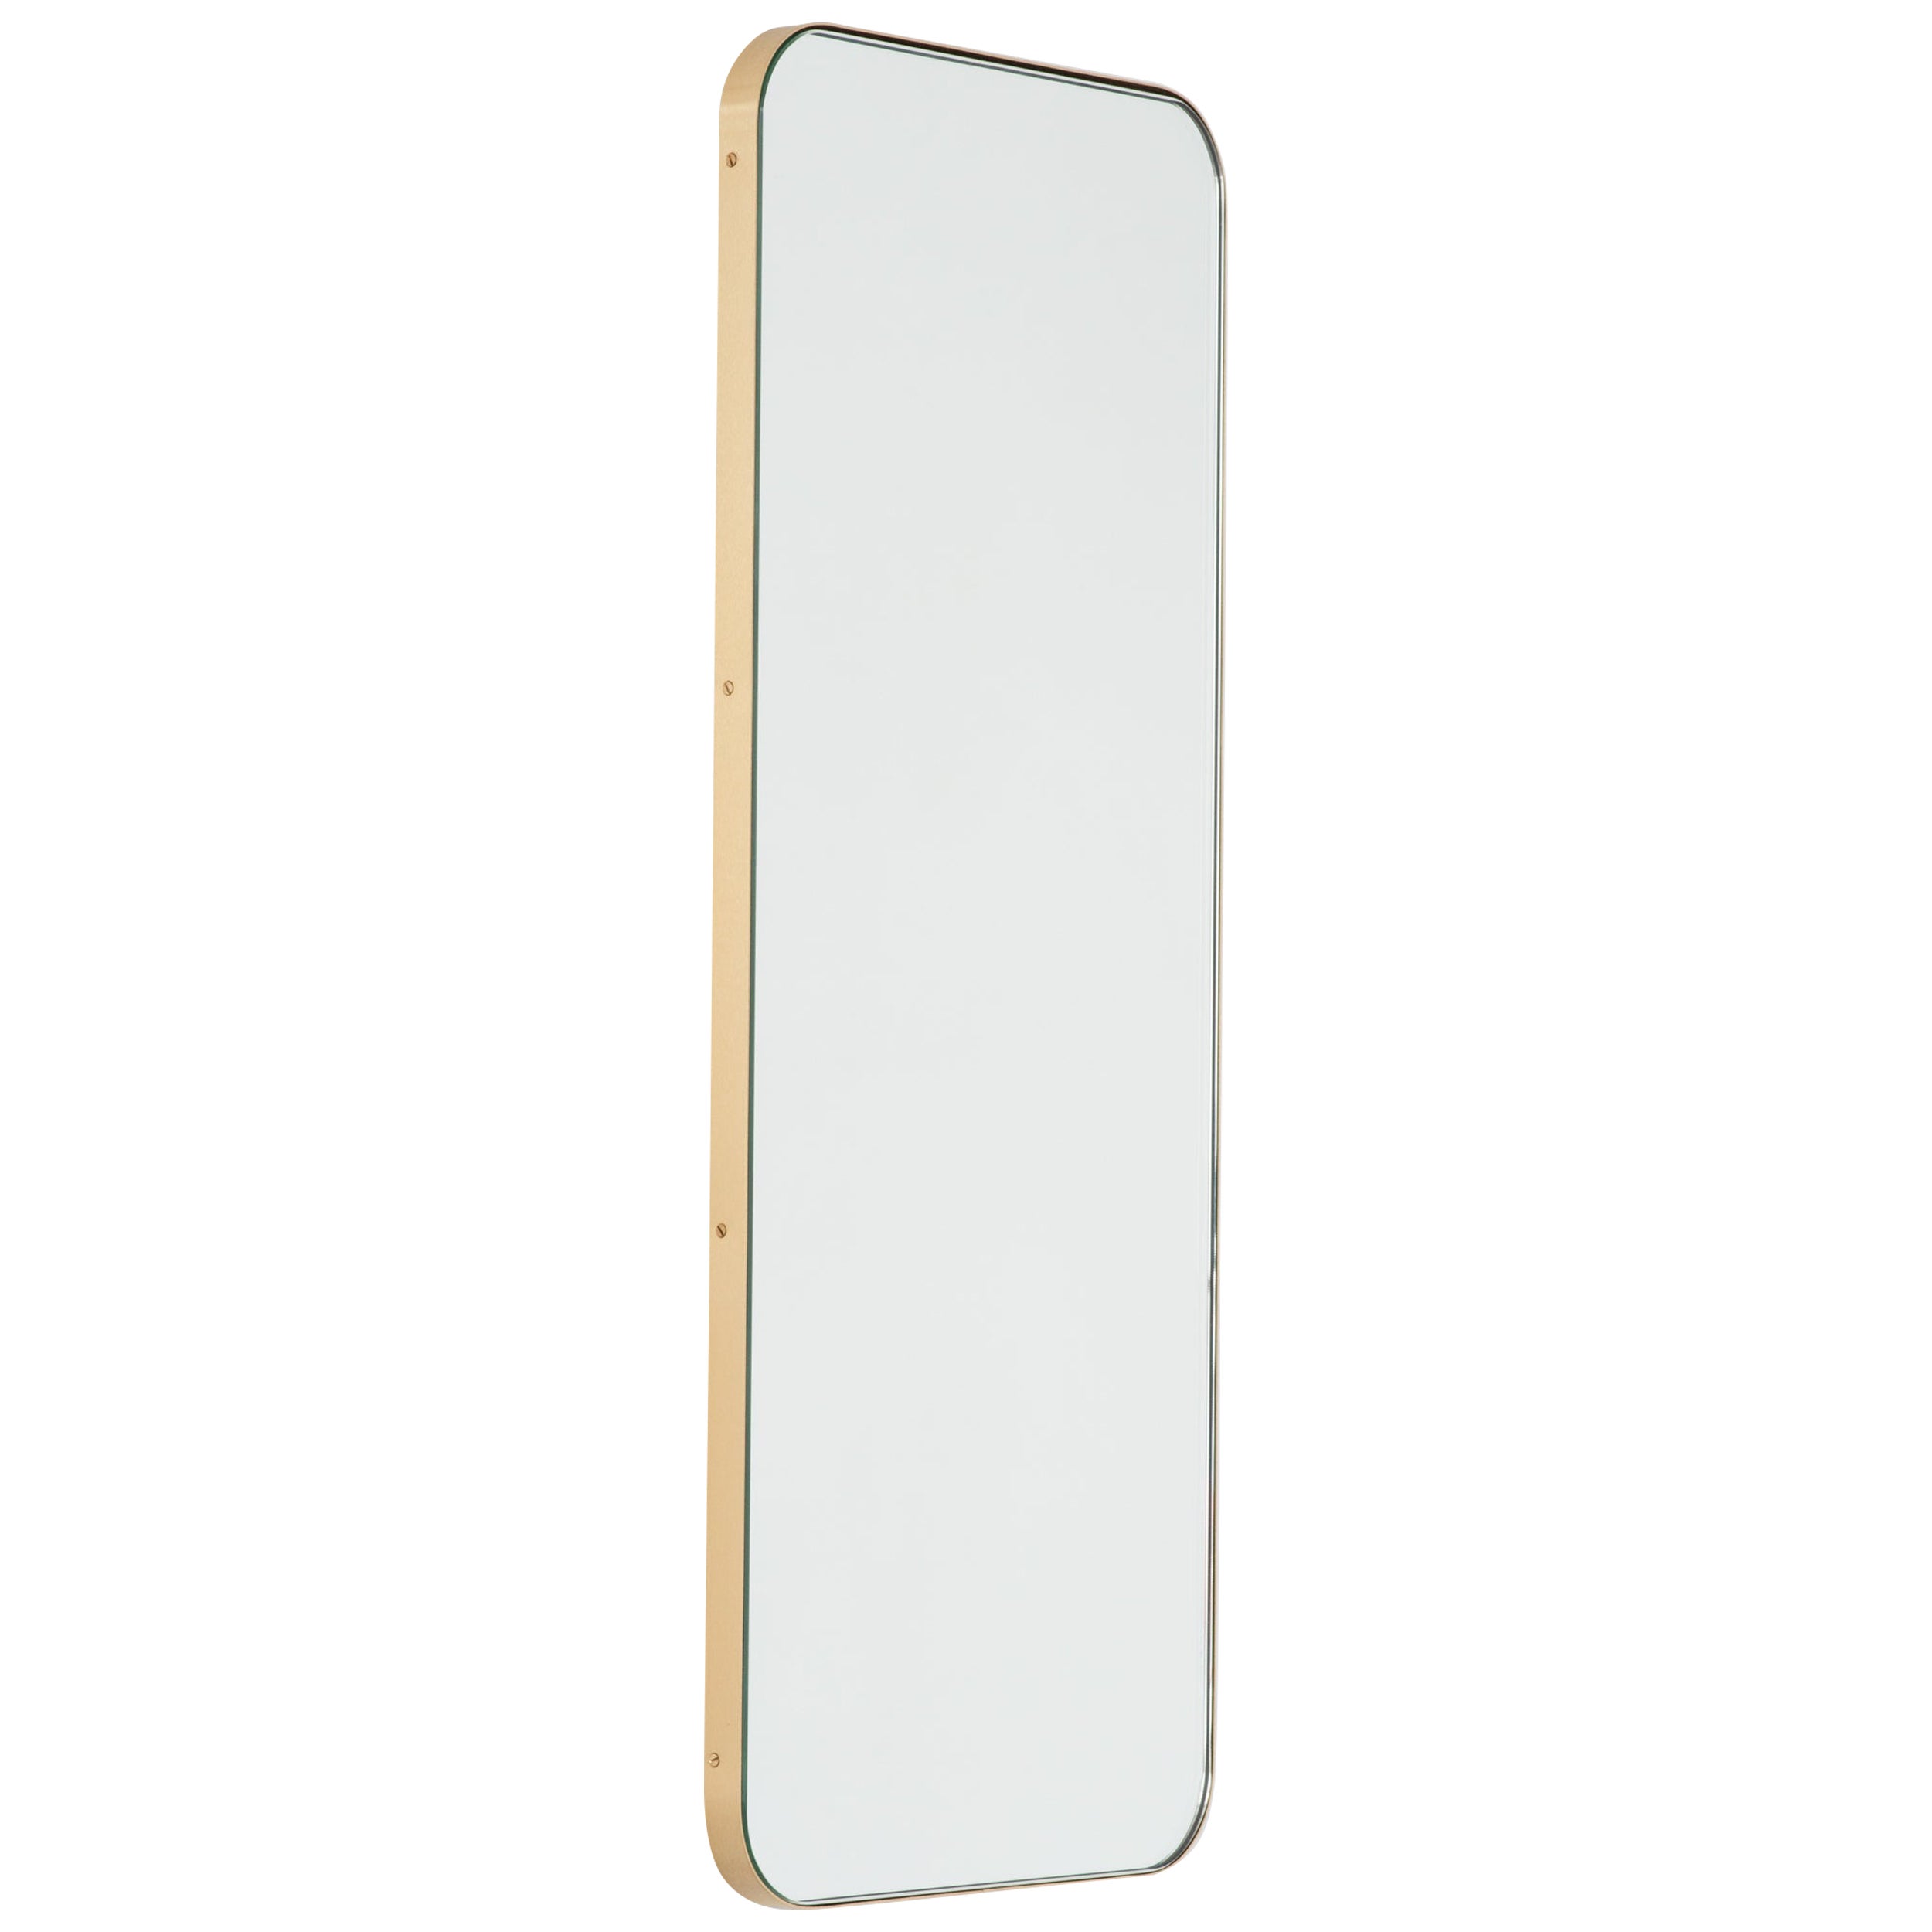 Miroir moderne rectangulaire Quadris avec cadre en laiton, large